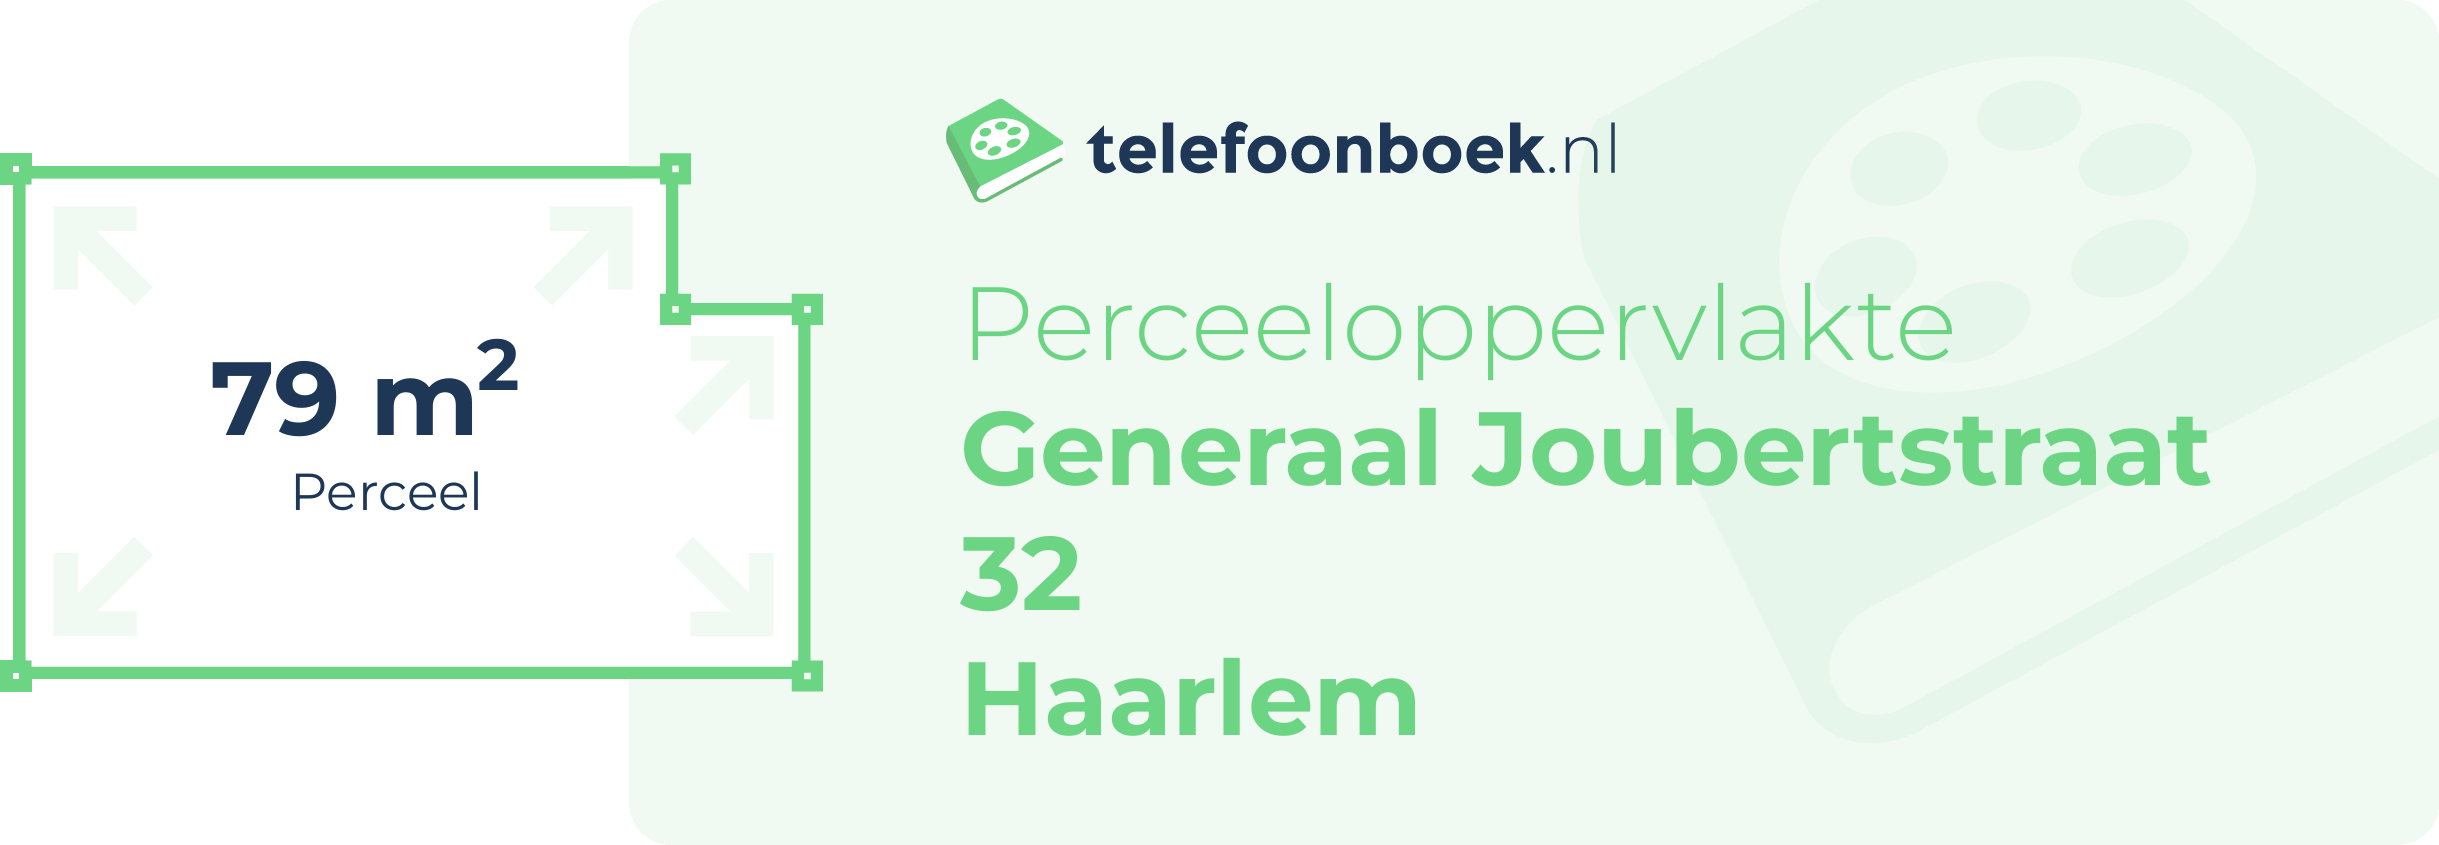 Perceeloppervlakte Generaal Joubertstraat 32 Haarlem